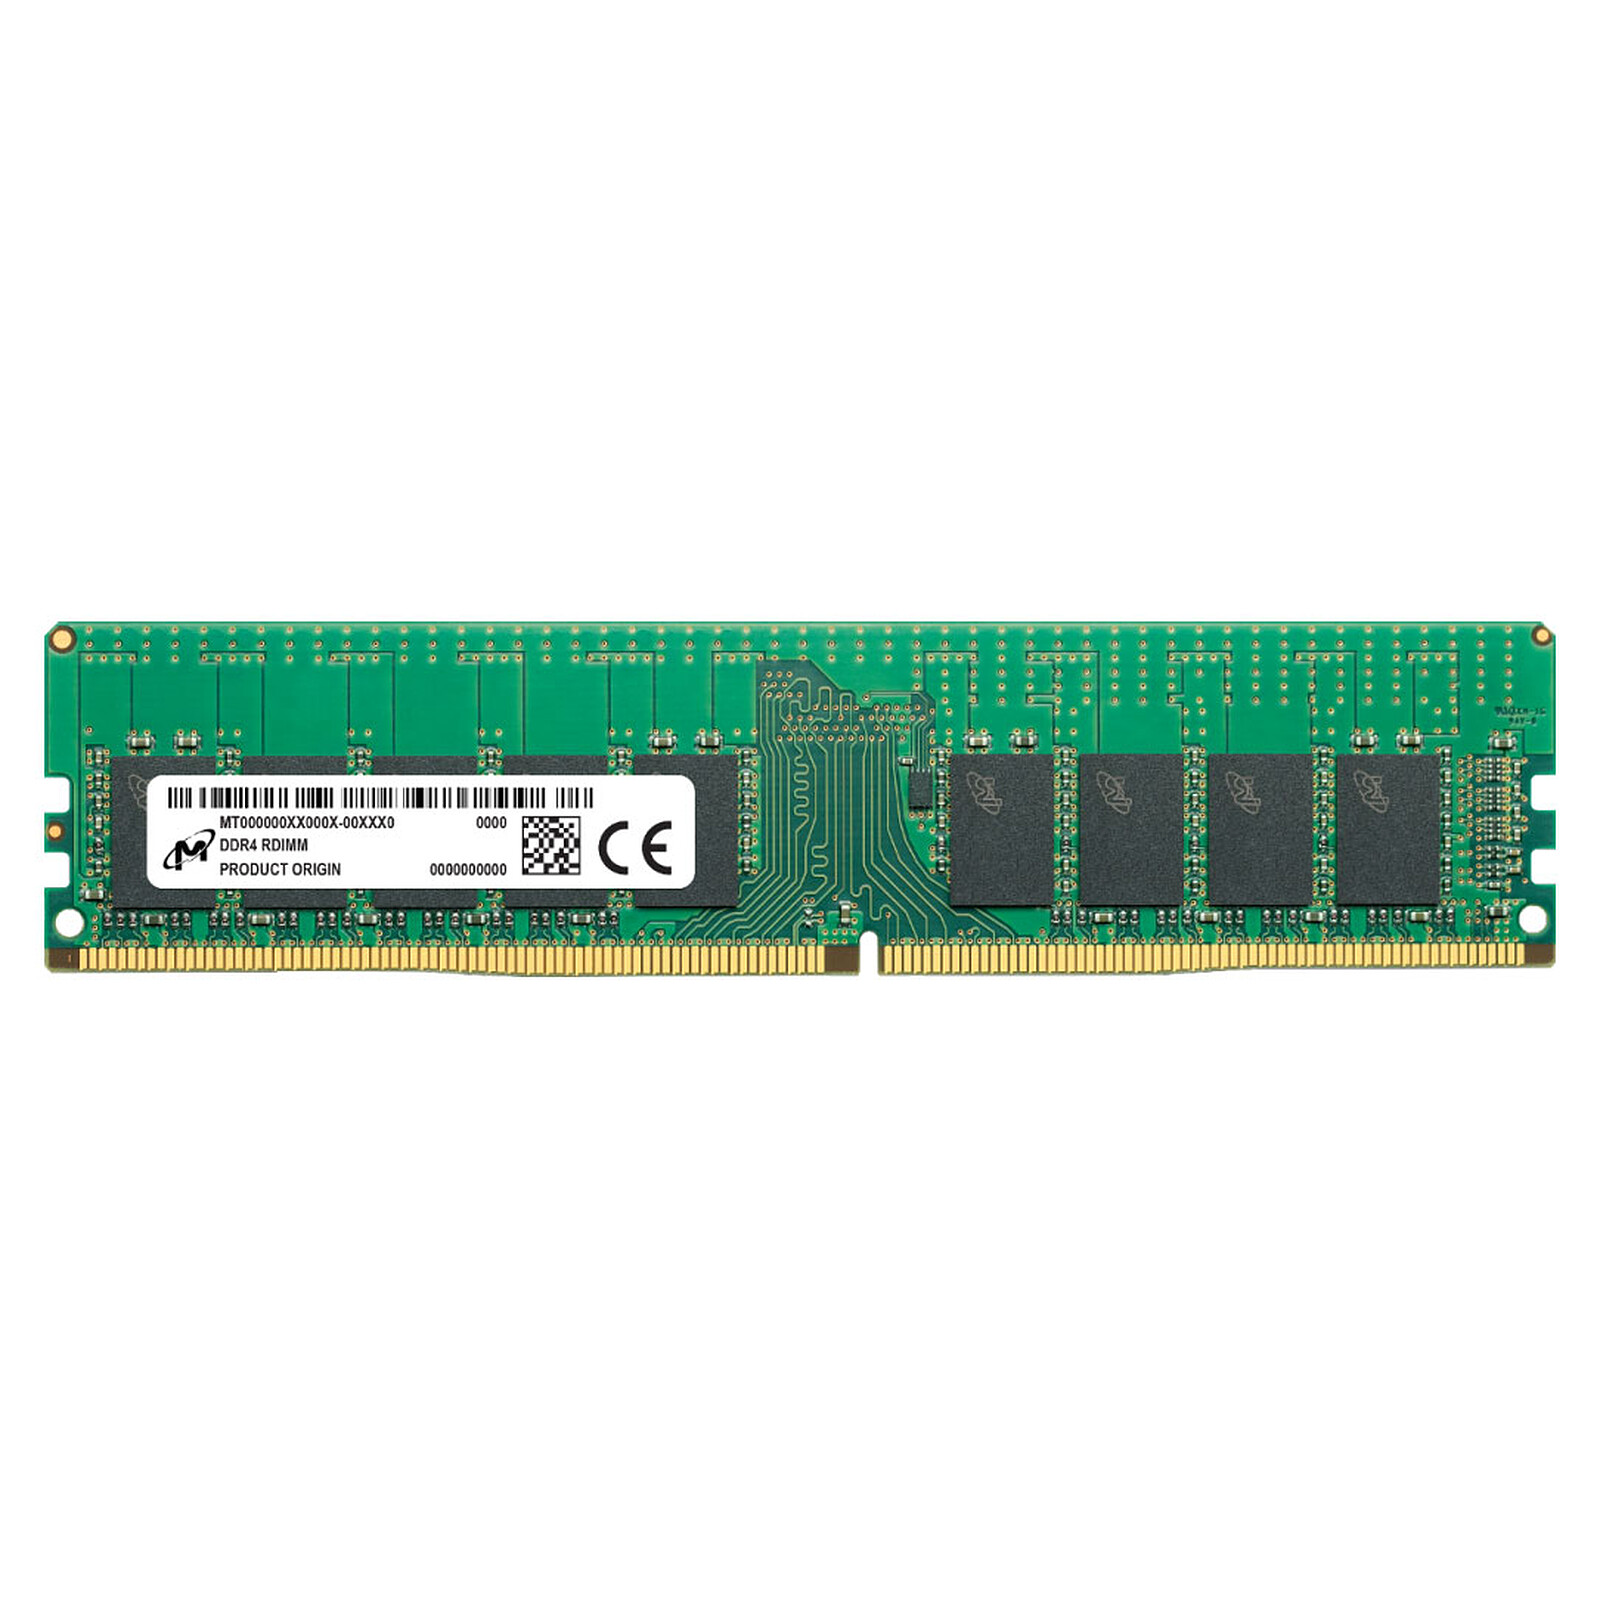 Barrette de RAM 32 Go ou 32 Go DDR3 ECC REG 4 Go pour ordinateur